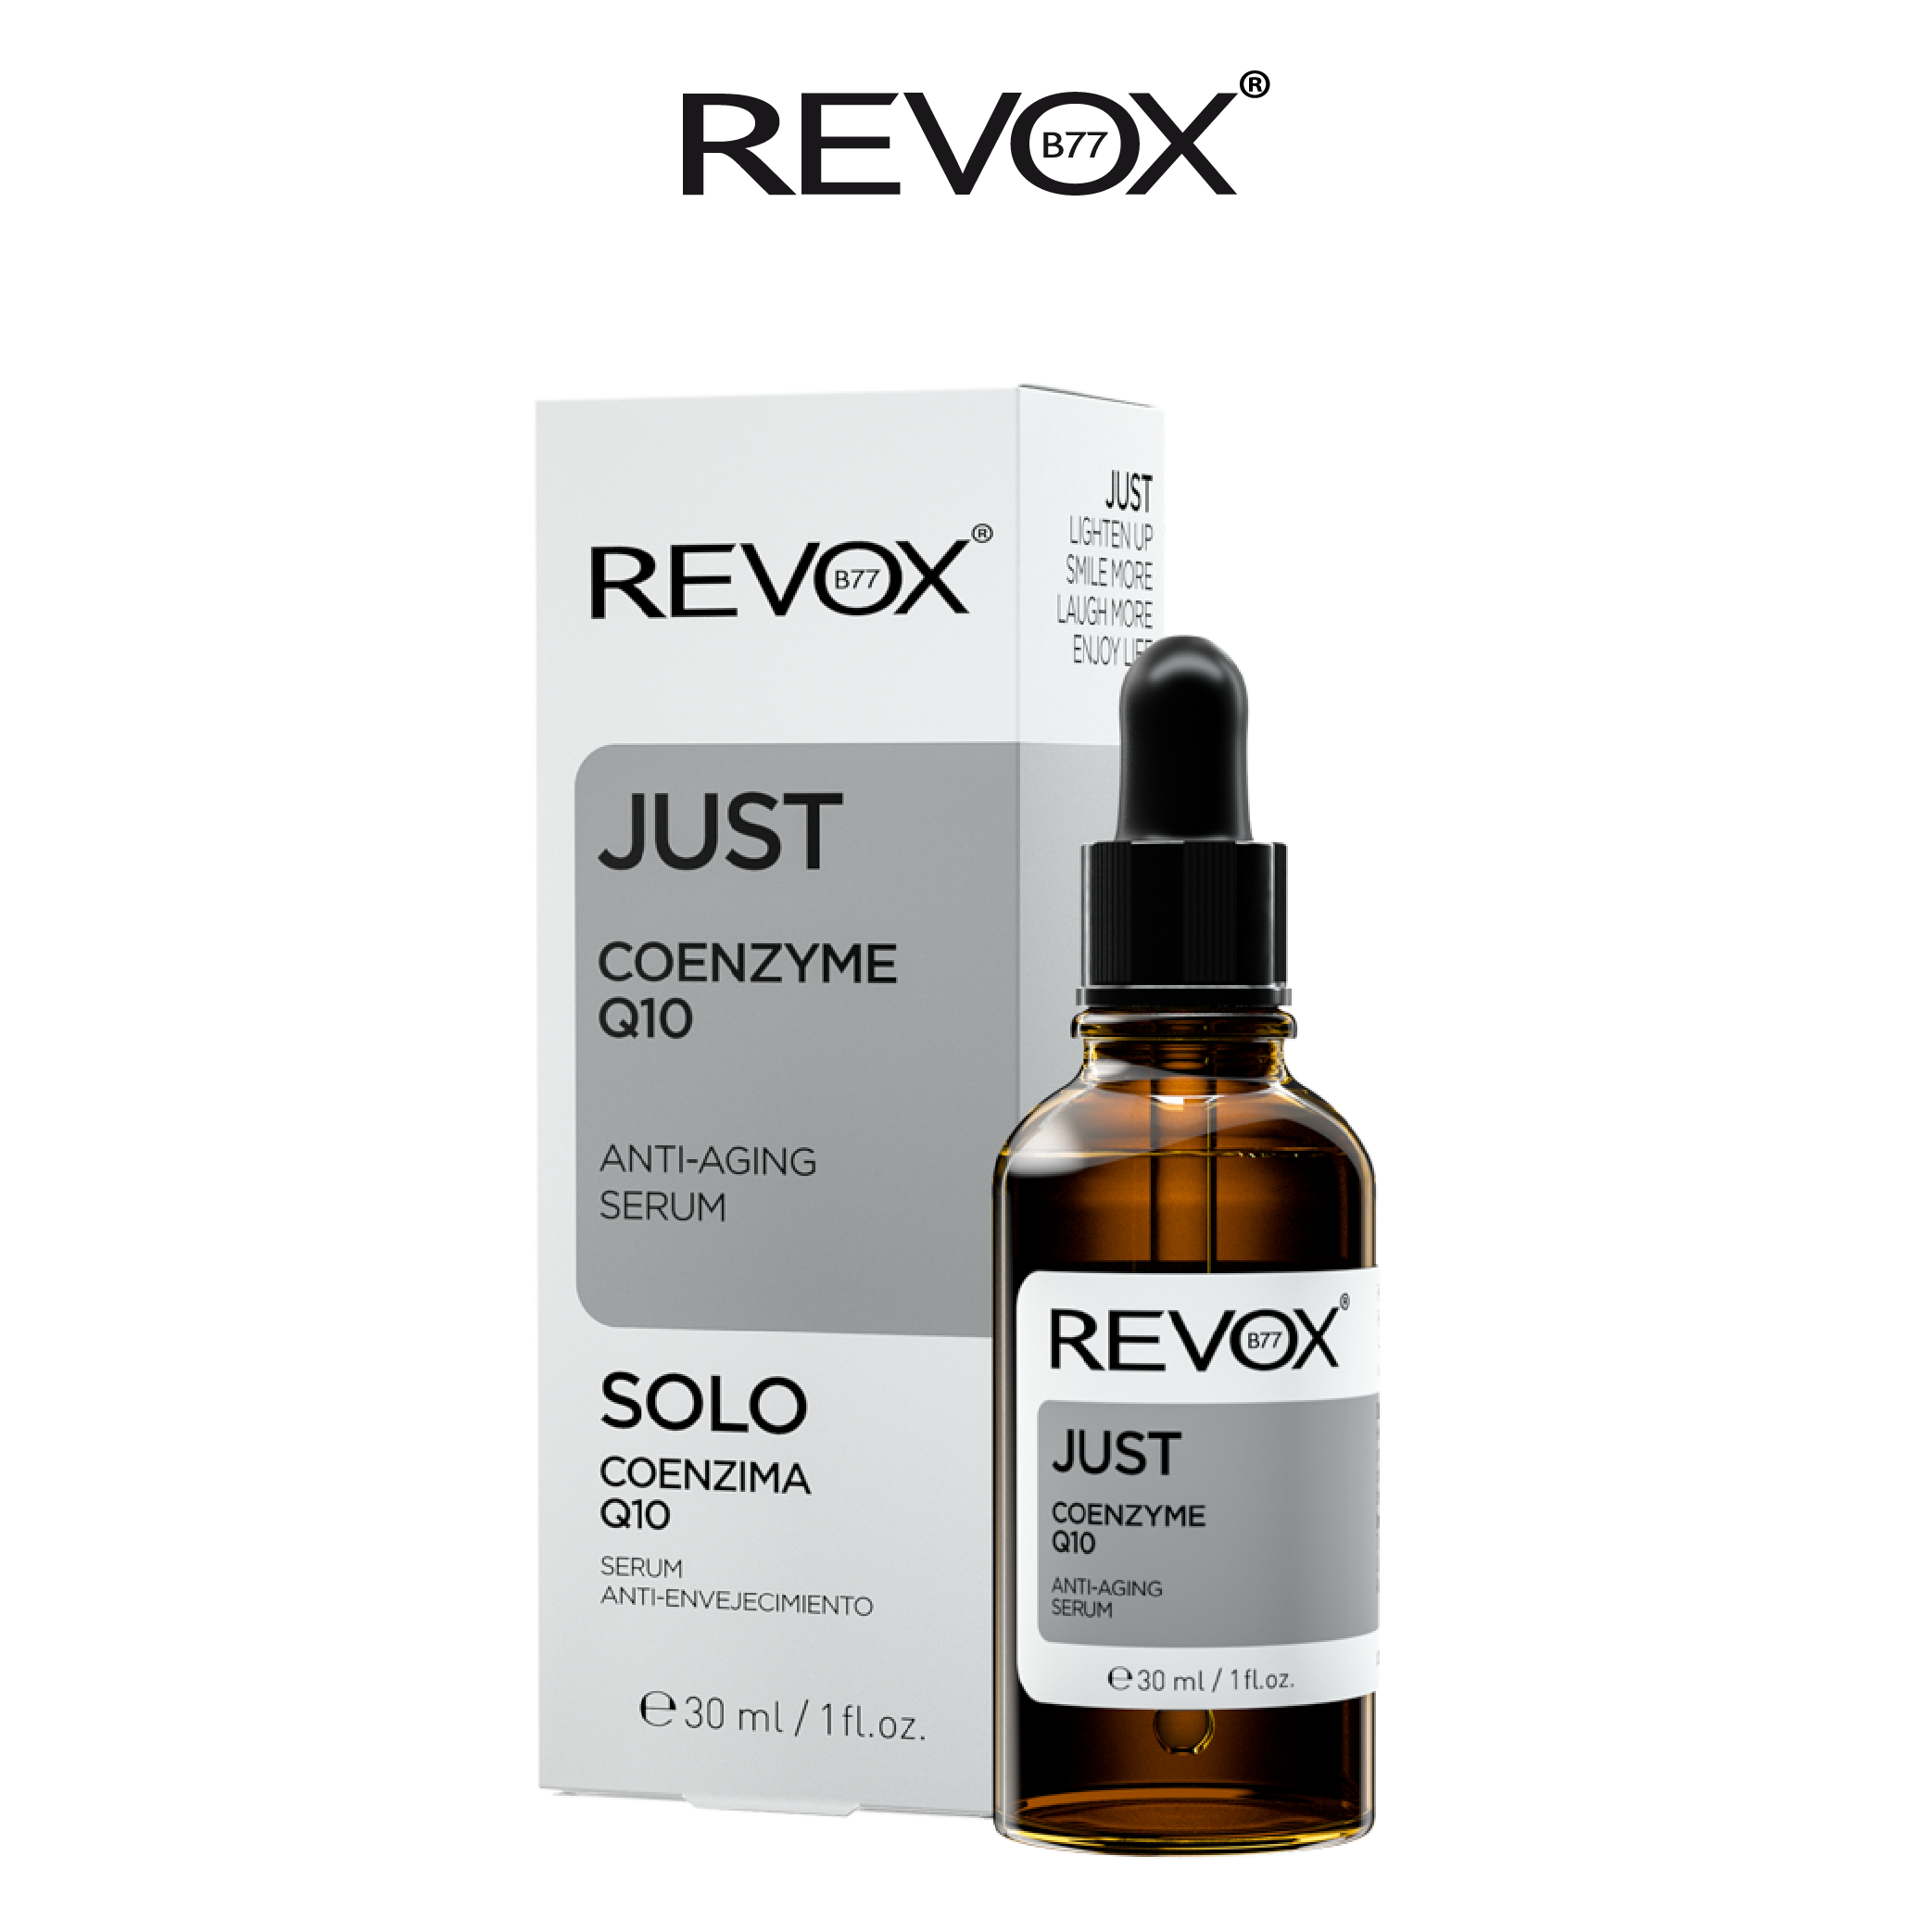 Serum ngừa lão hóa cho da mặt và cổ Revox B77 Just- Coenzyme Q10 - 30ml